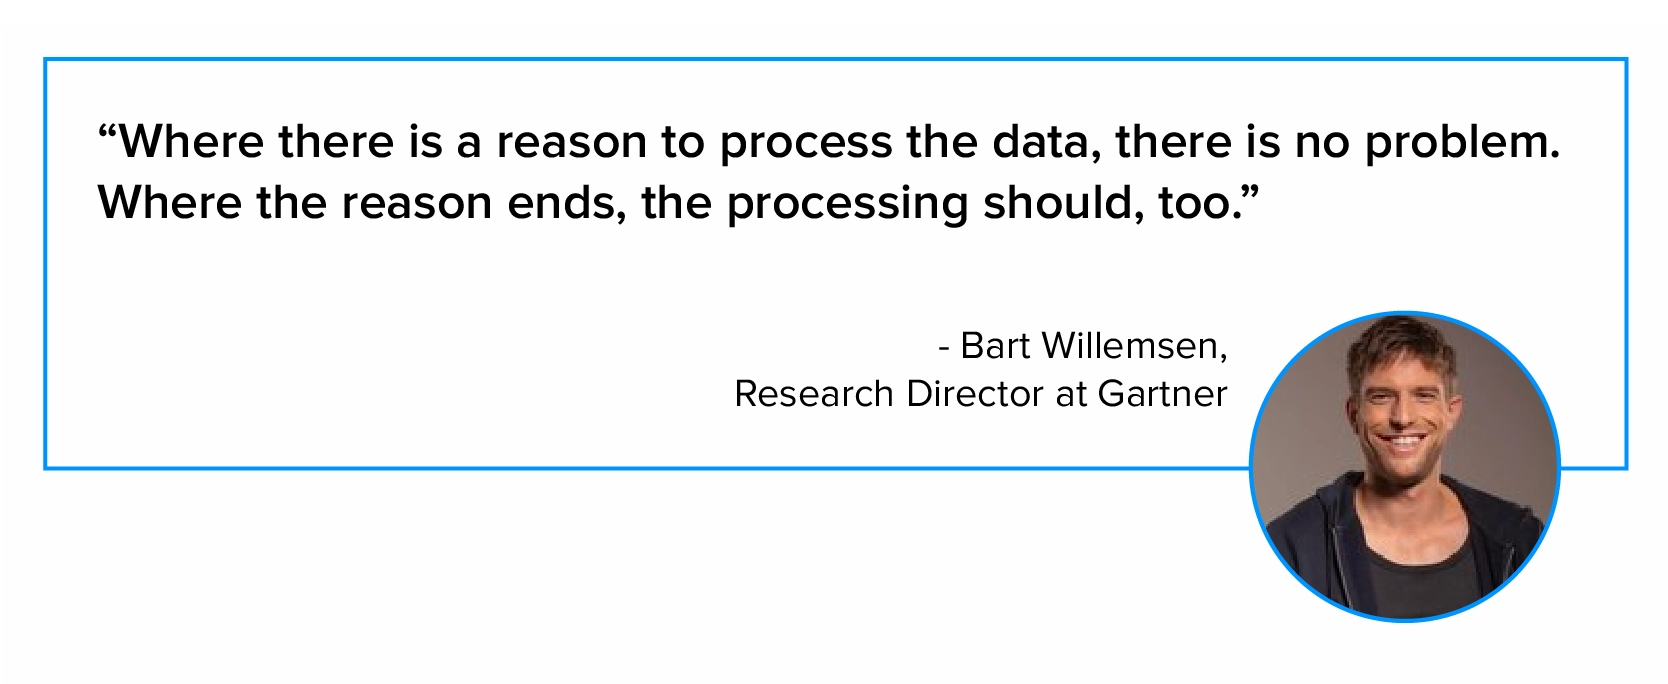 Cita sobre el procesamiento de datos de Bart Willemsen